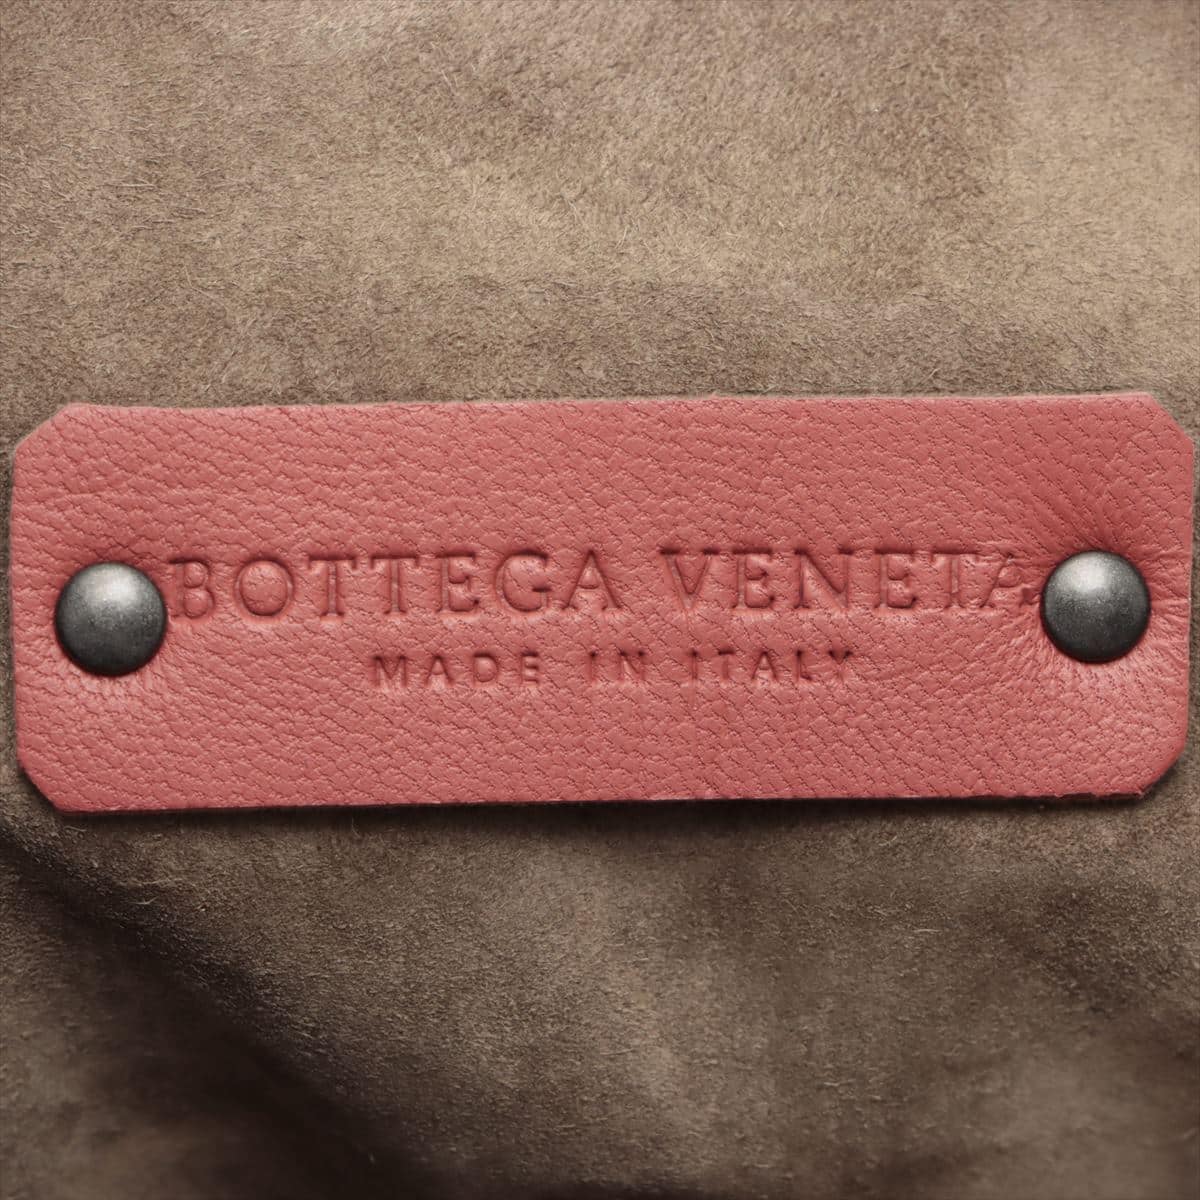 Bottega Veneta Intrecciato 皮革托特包 粉色